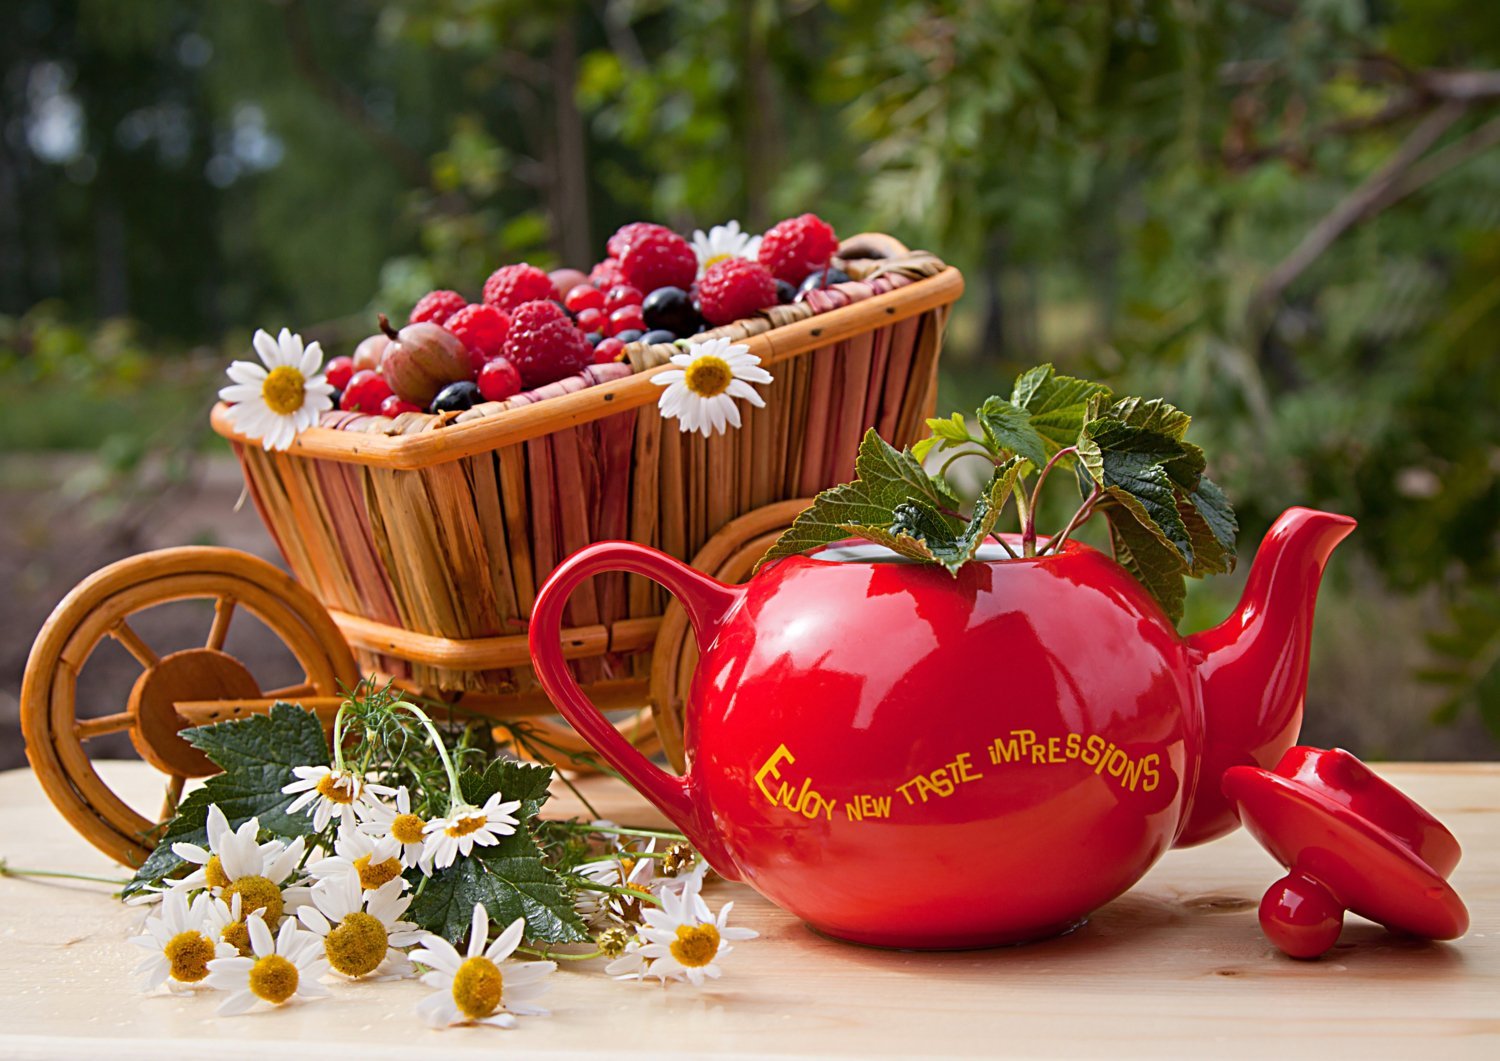 Утро доброе новые картинки необычные очень красивые. Летнее настроение. Доброе утро лето ягоды. Цветы и ягоды в чашке. С добрым летнтнтм утром.